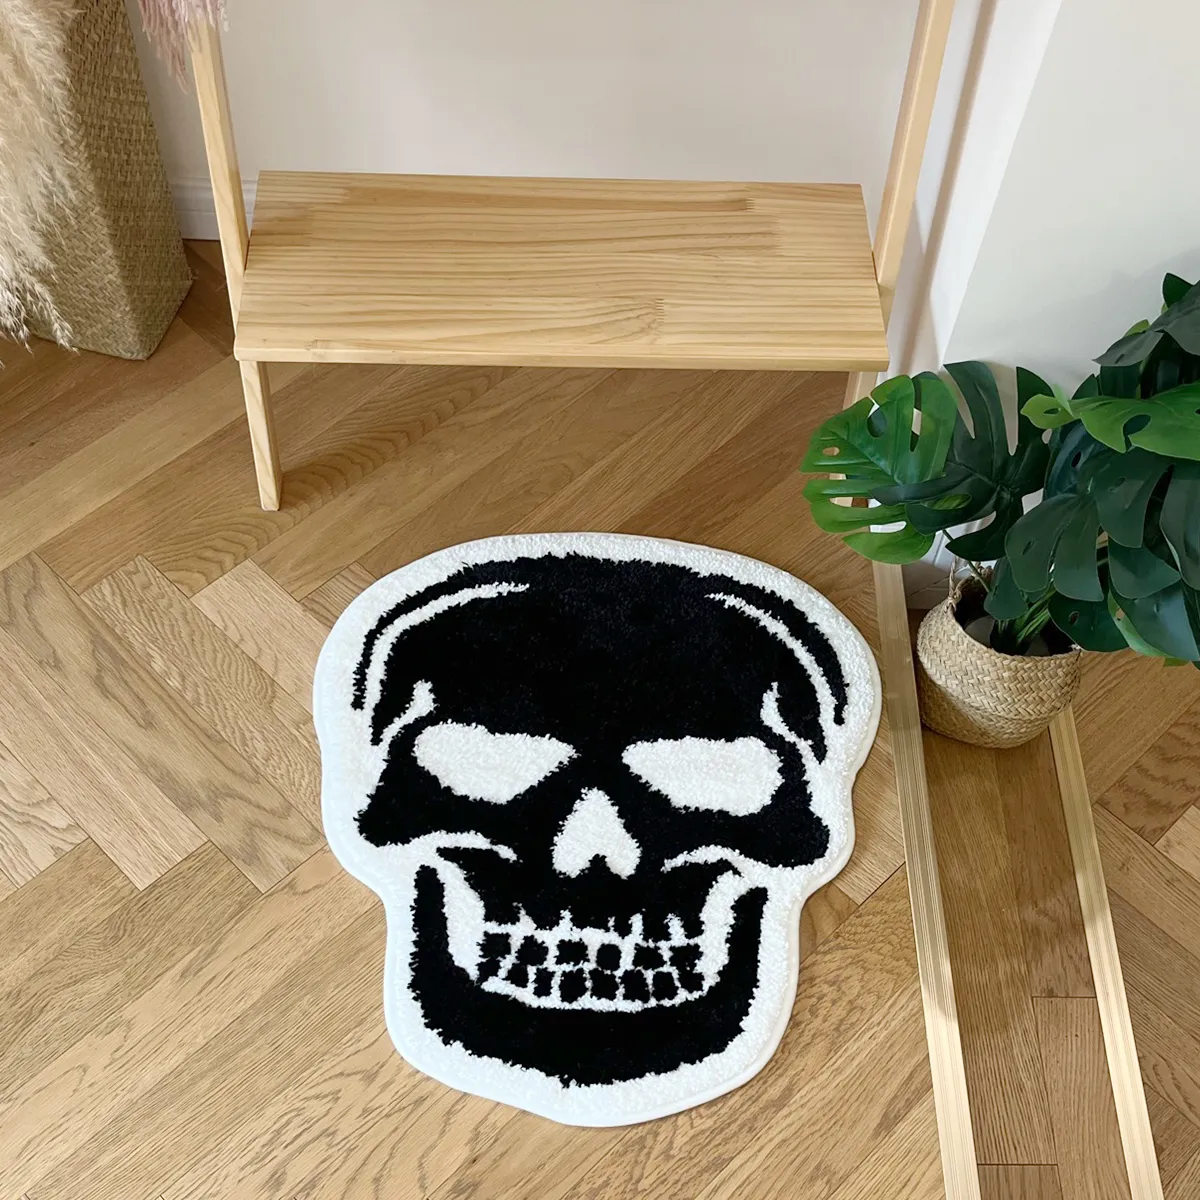 Skull Baignage tapis tufted tapis gothique décor de la maison halloween tapis de salle de bain noir goth chambre cuisine salle de cuisine sorcière cadeau spooky